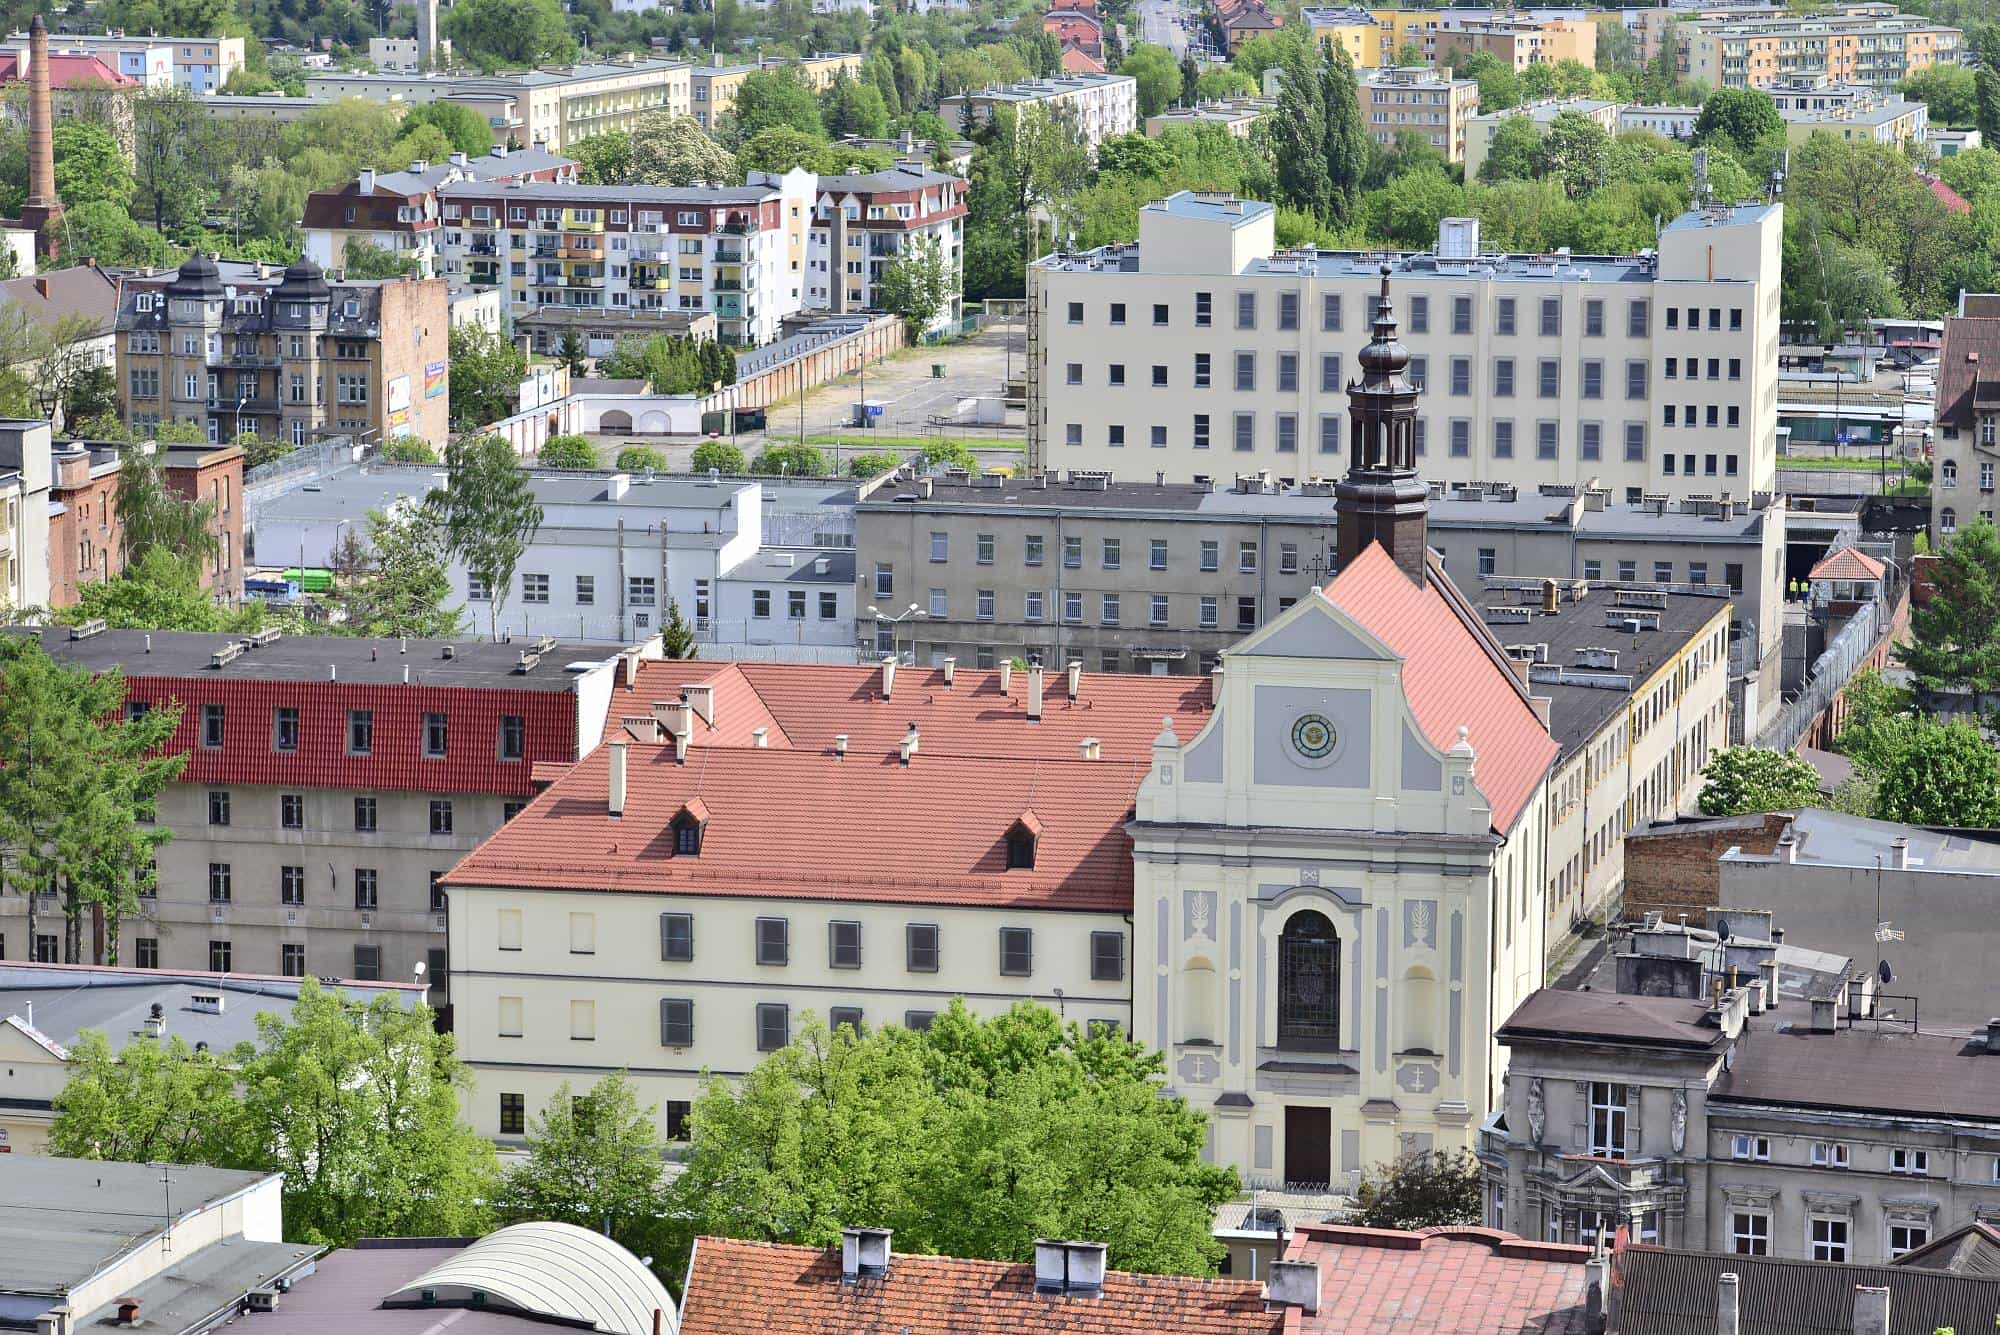 Zwiedzanie klasztoru i kościoła Reformatów 3 maja 2018